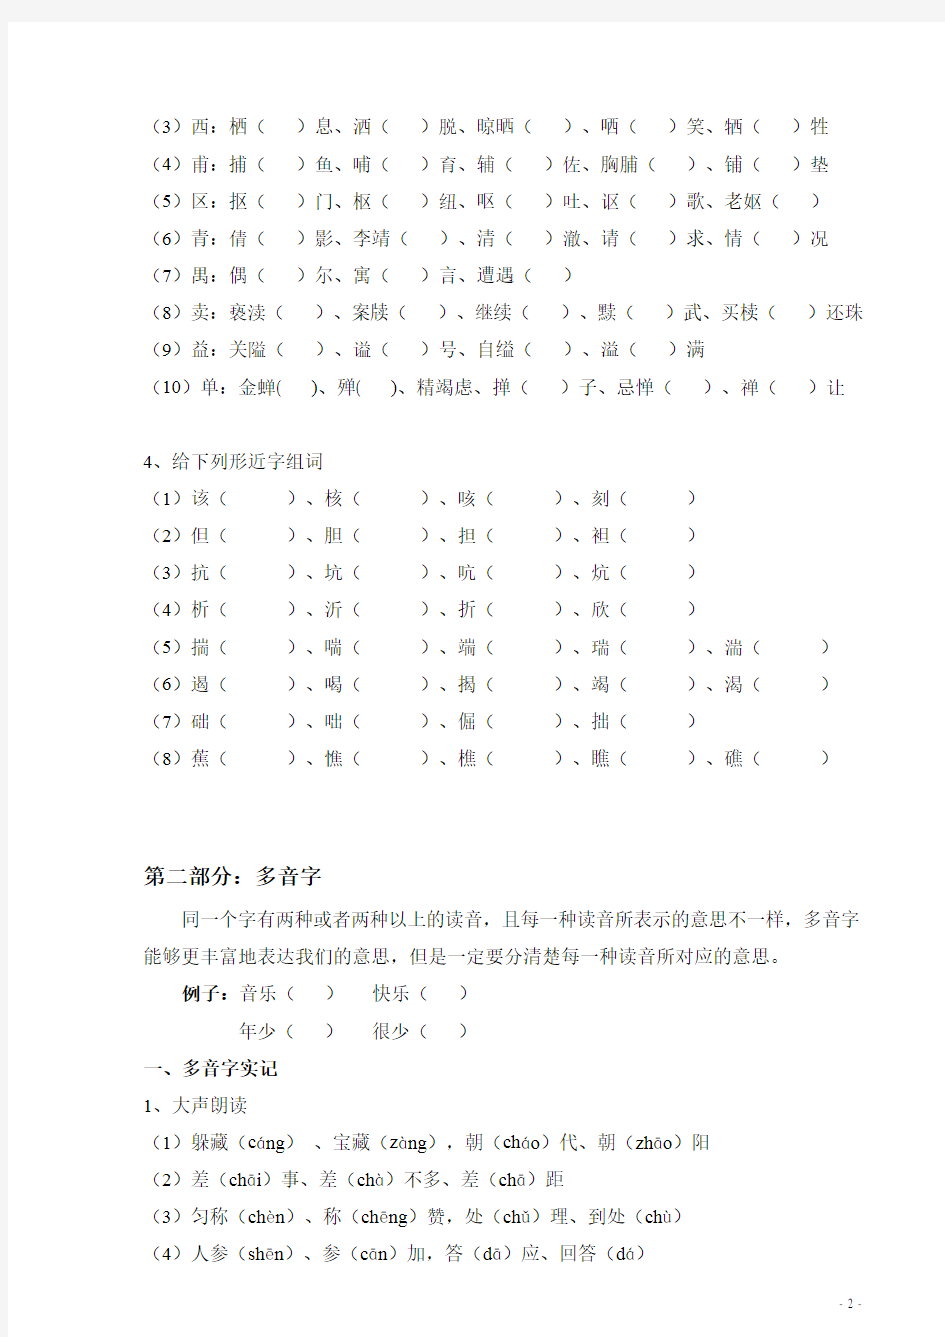 【语文】(第19节课 形近字和多音字)